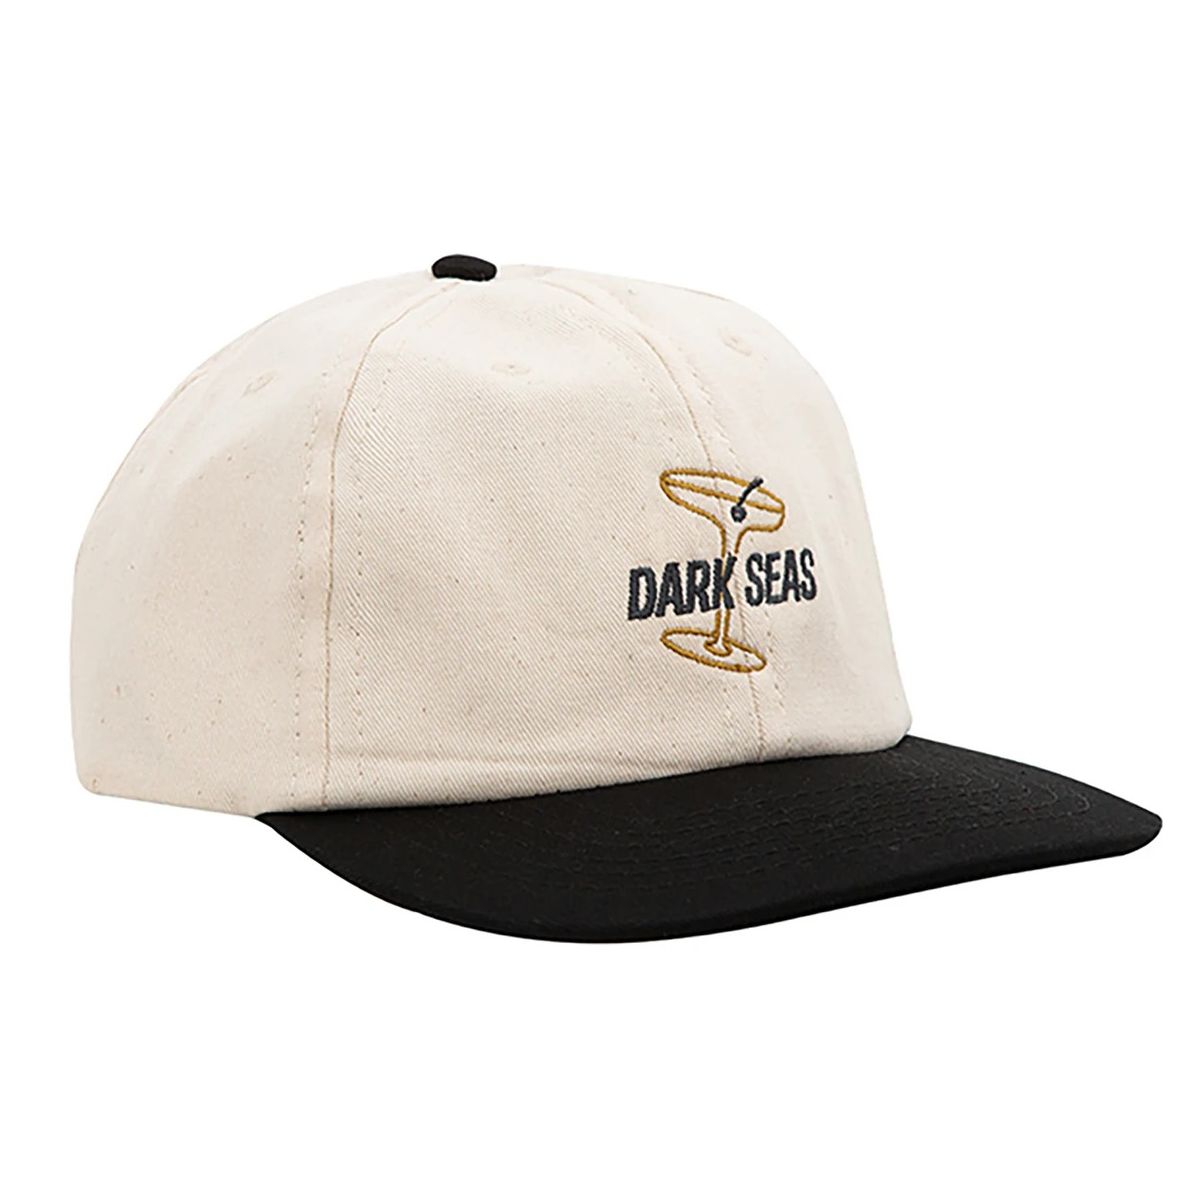 DARK SEAS CONTINENTAL HAT WHITE/BLACK